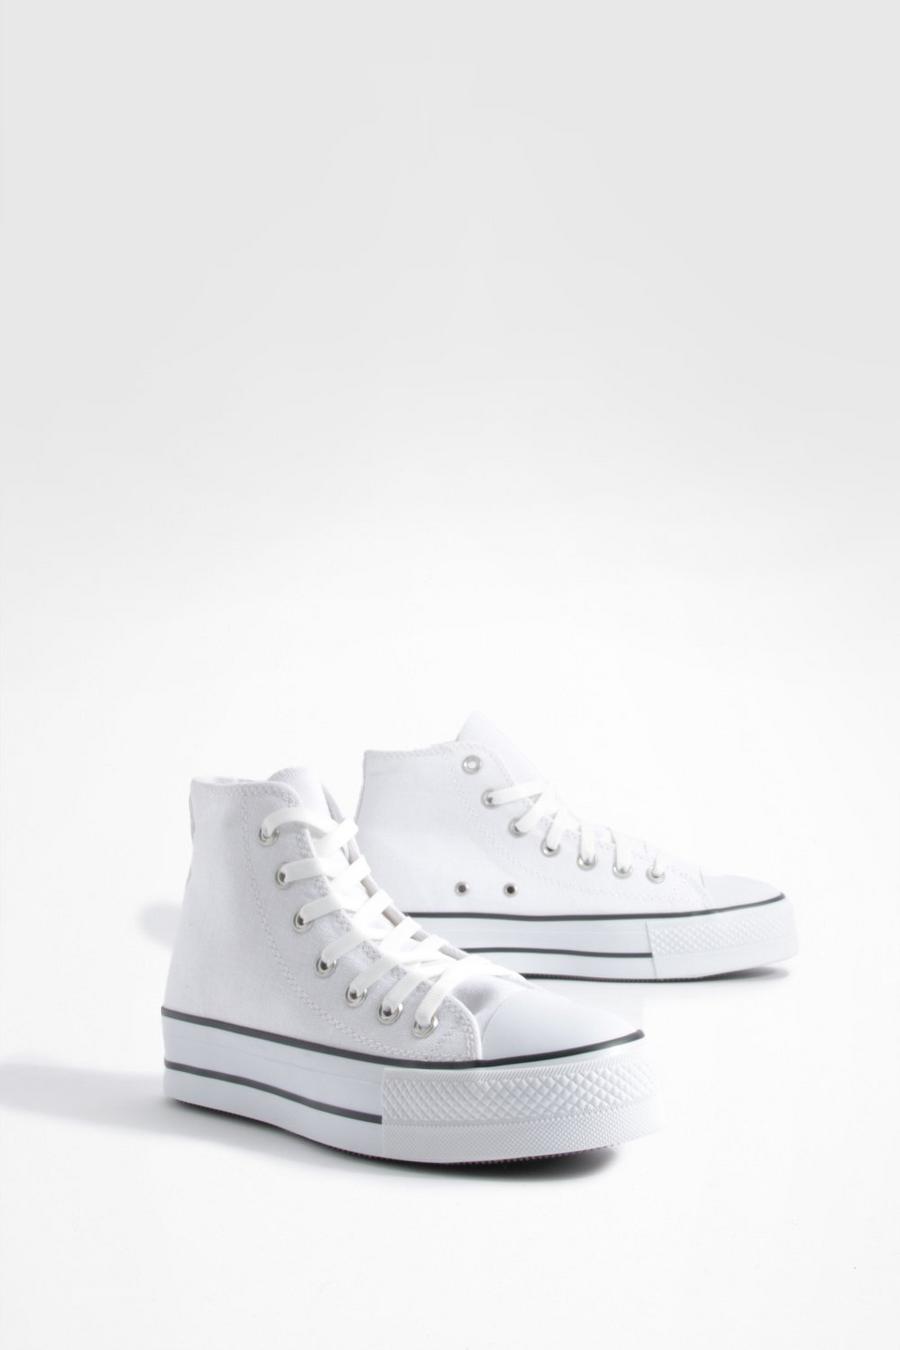 Zapatillas de lona altas con suela gruesa, White bianco